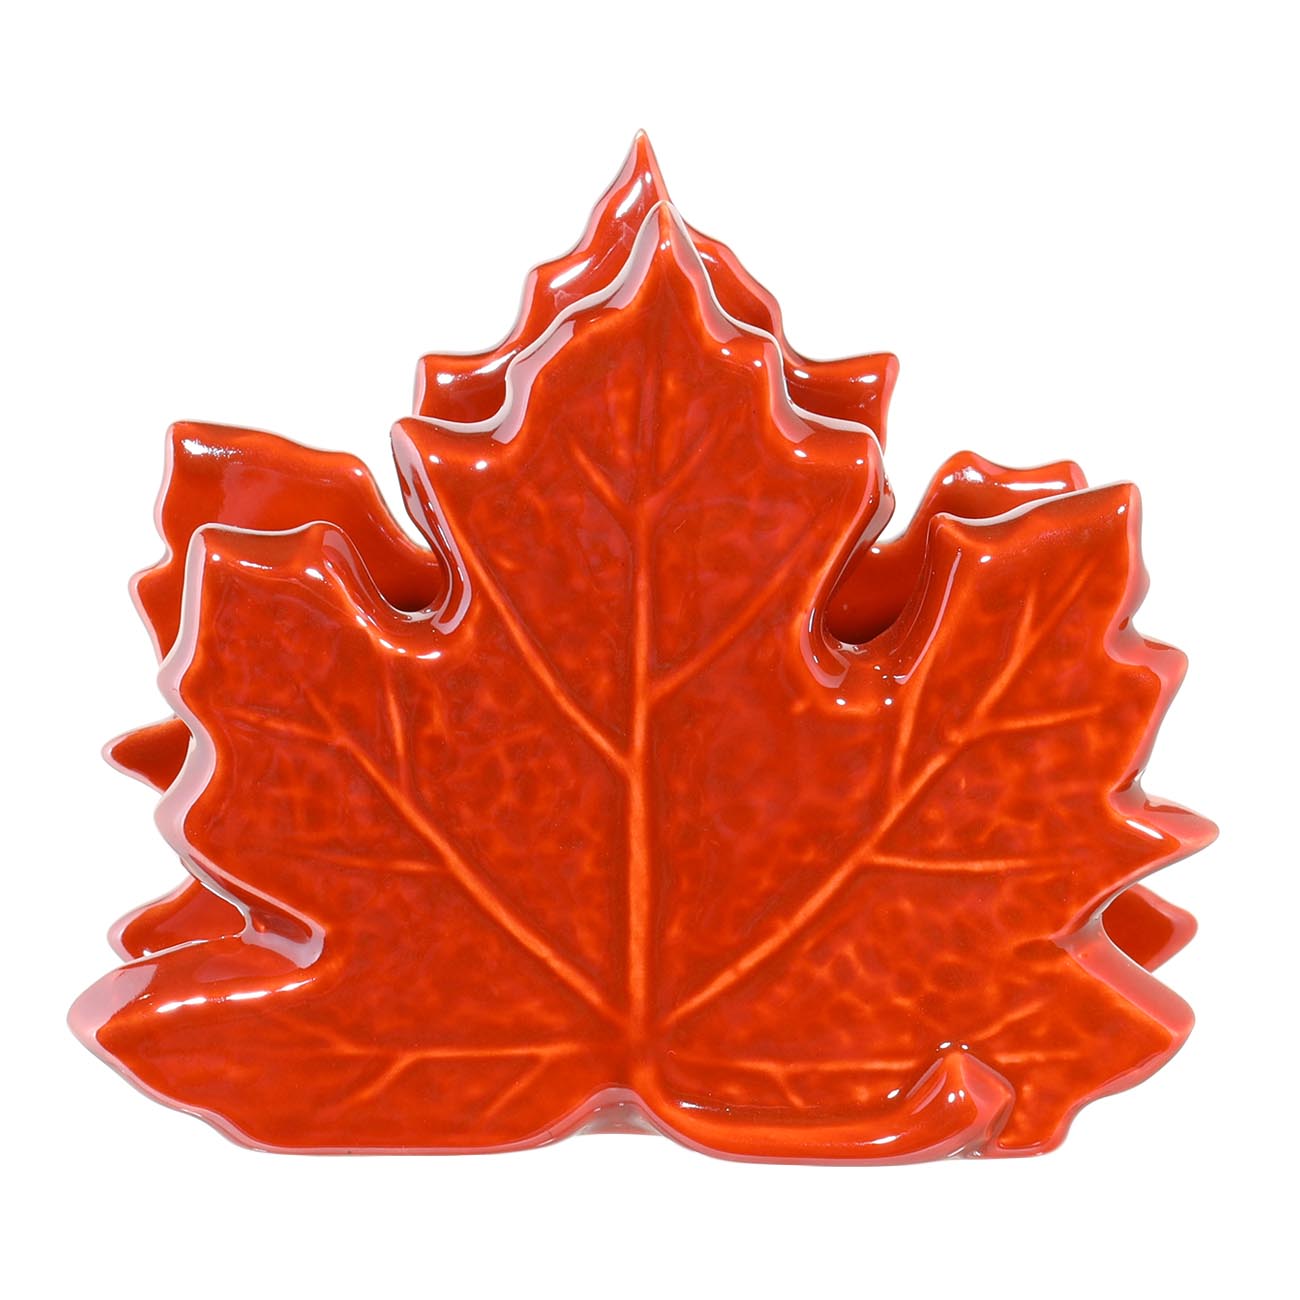 Салфетница, 10 см, керамика, оранжевая, перламутр, Кленовый лист, Autumn bright - фото 1